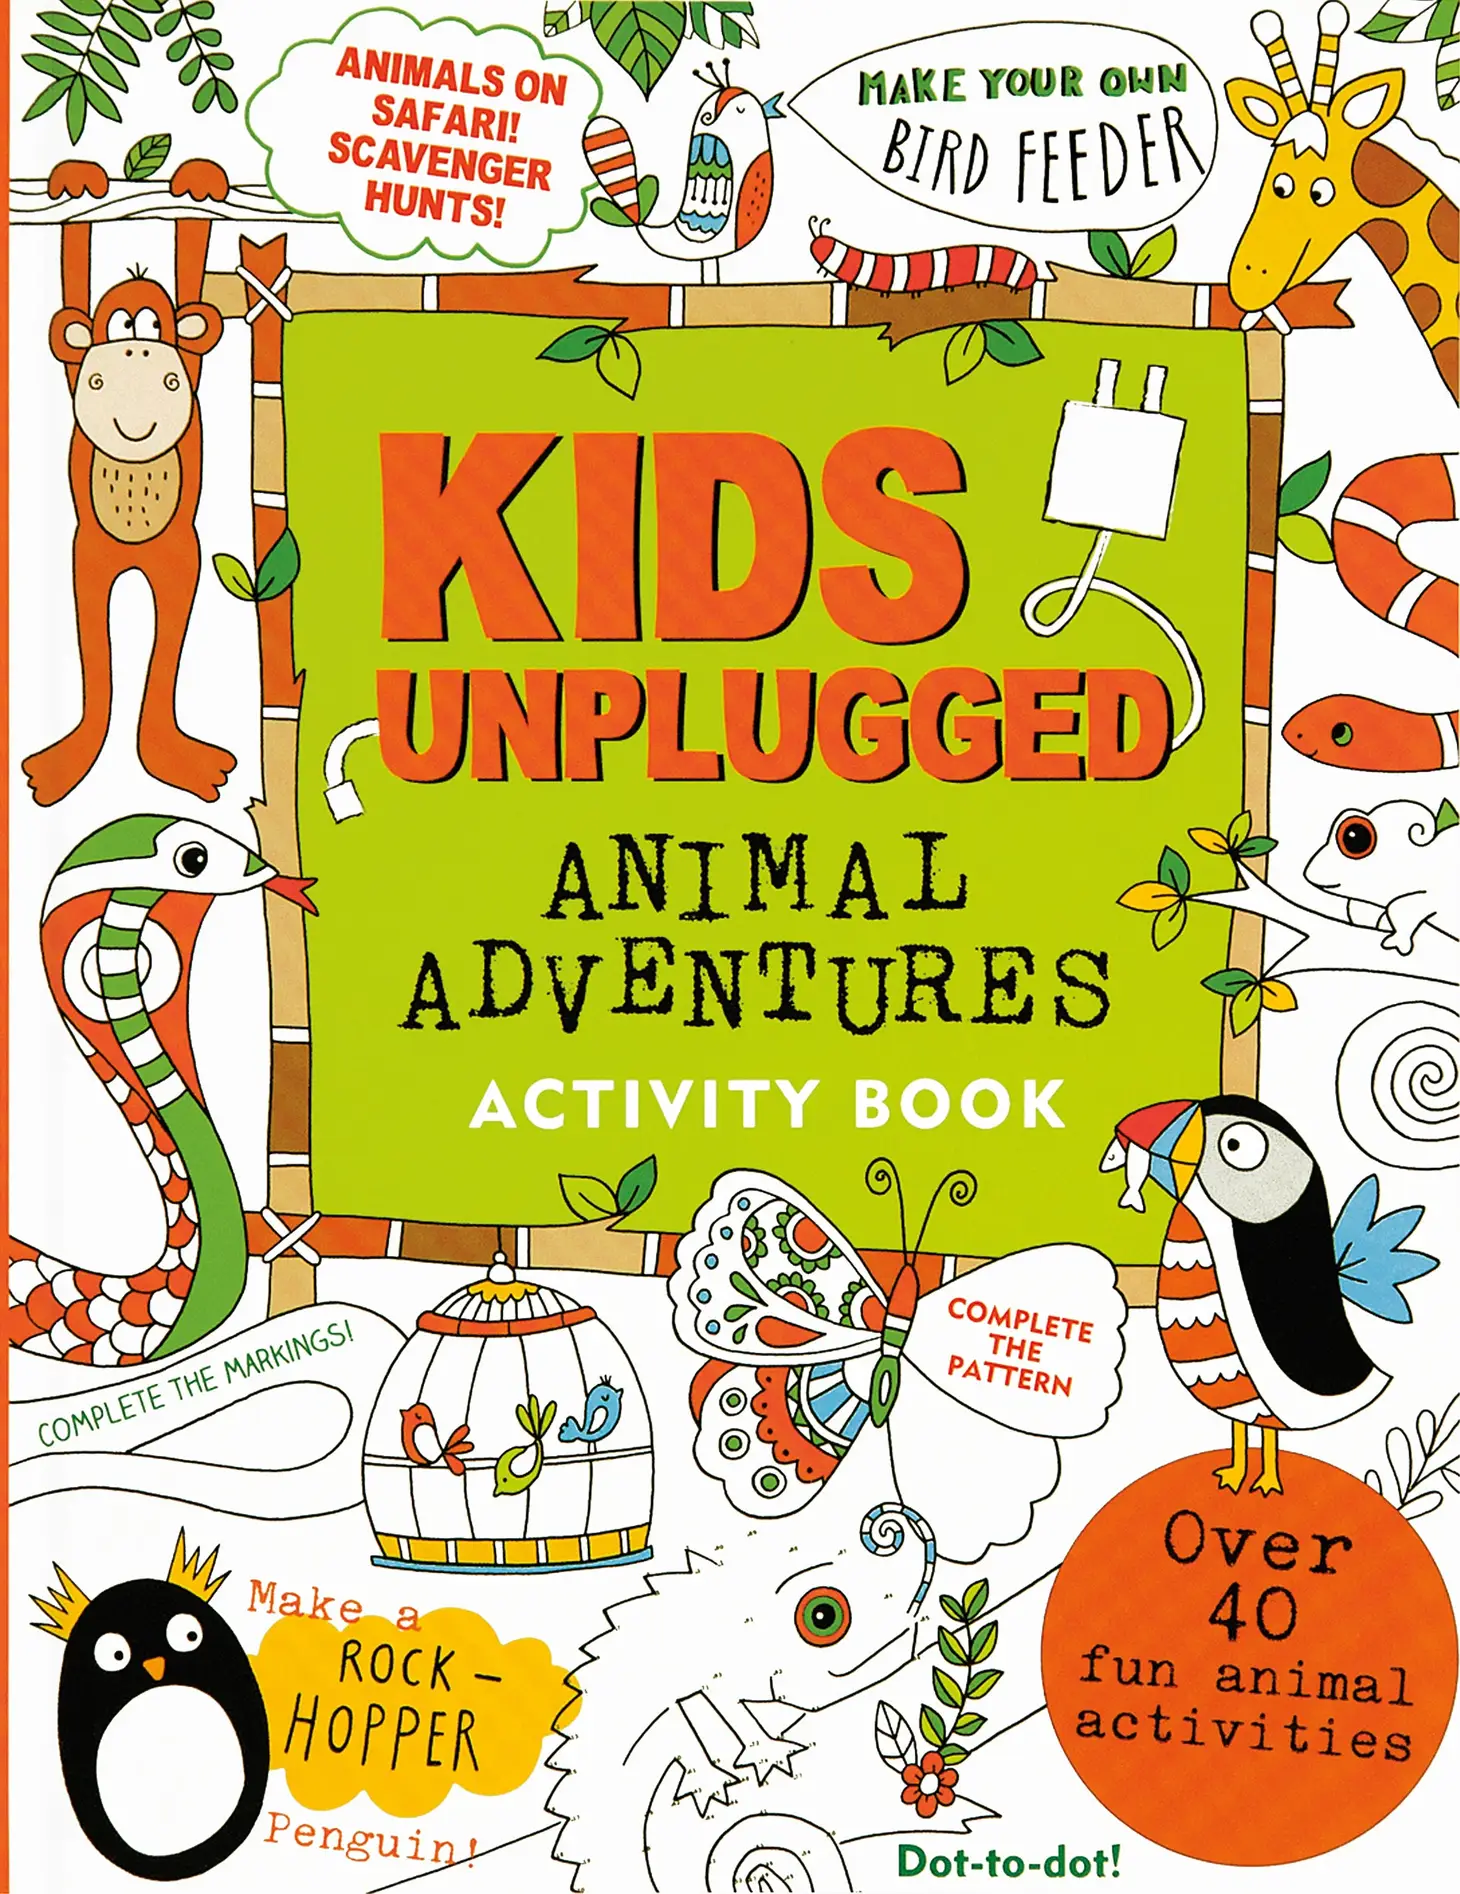 Kids Unplugged: Animal Adventures